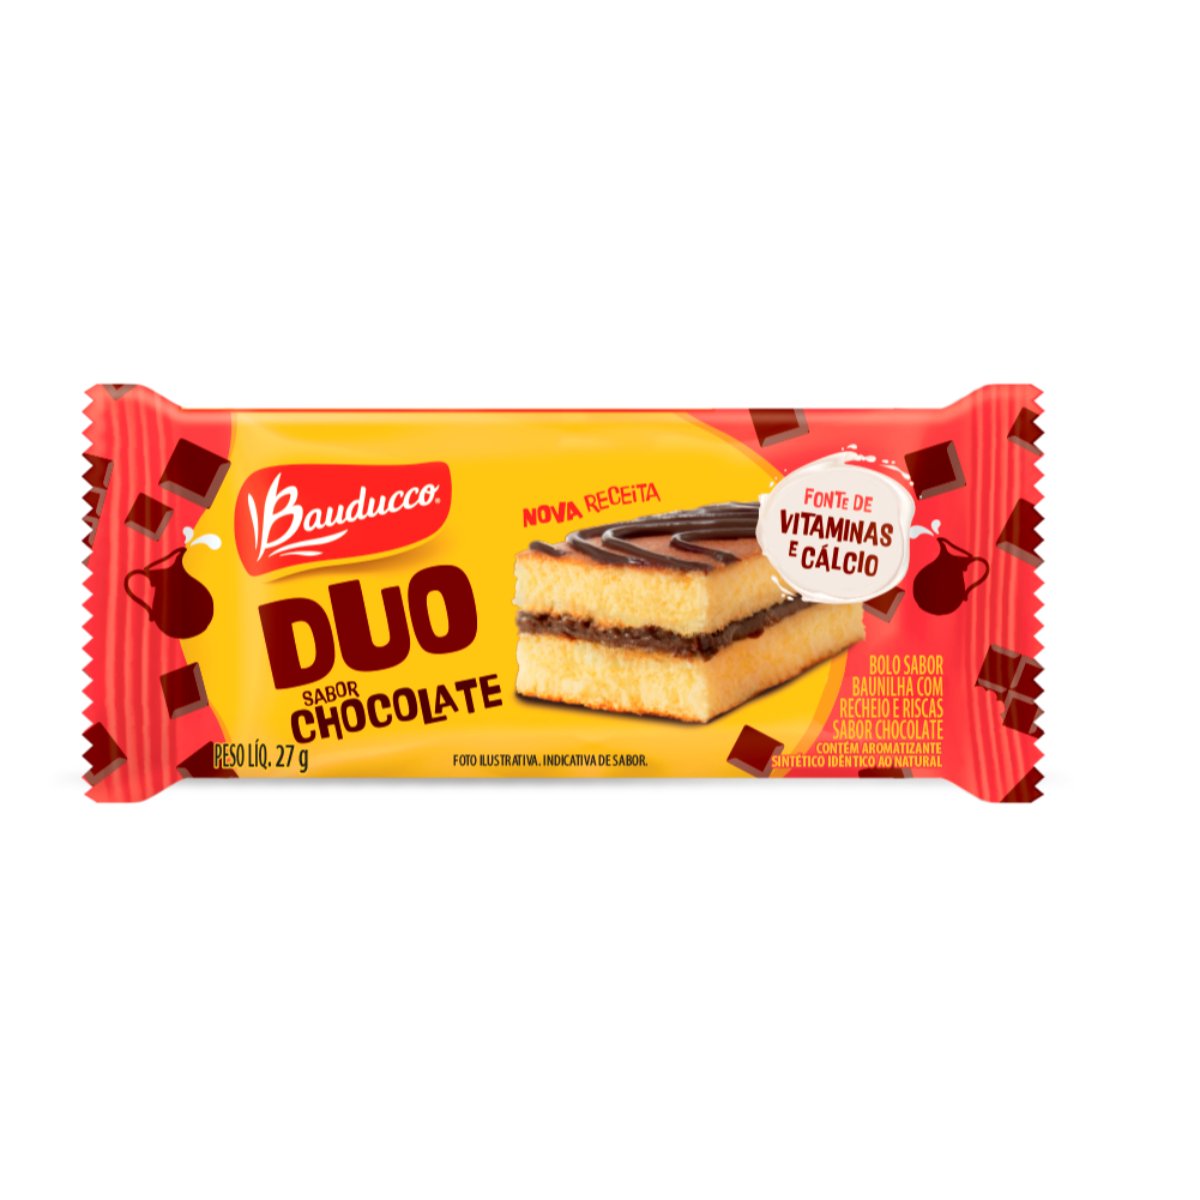 Bolinho Bauducco Duo Chocolate 15 unidades de 27g